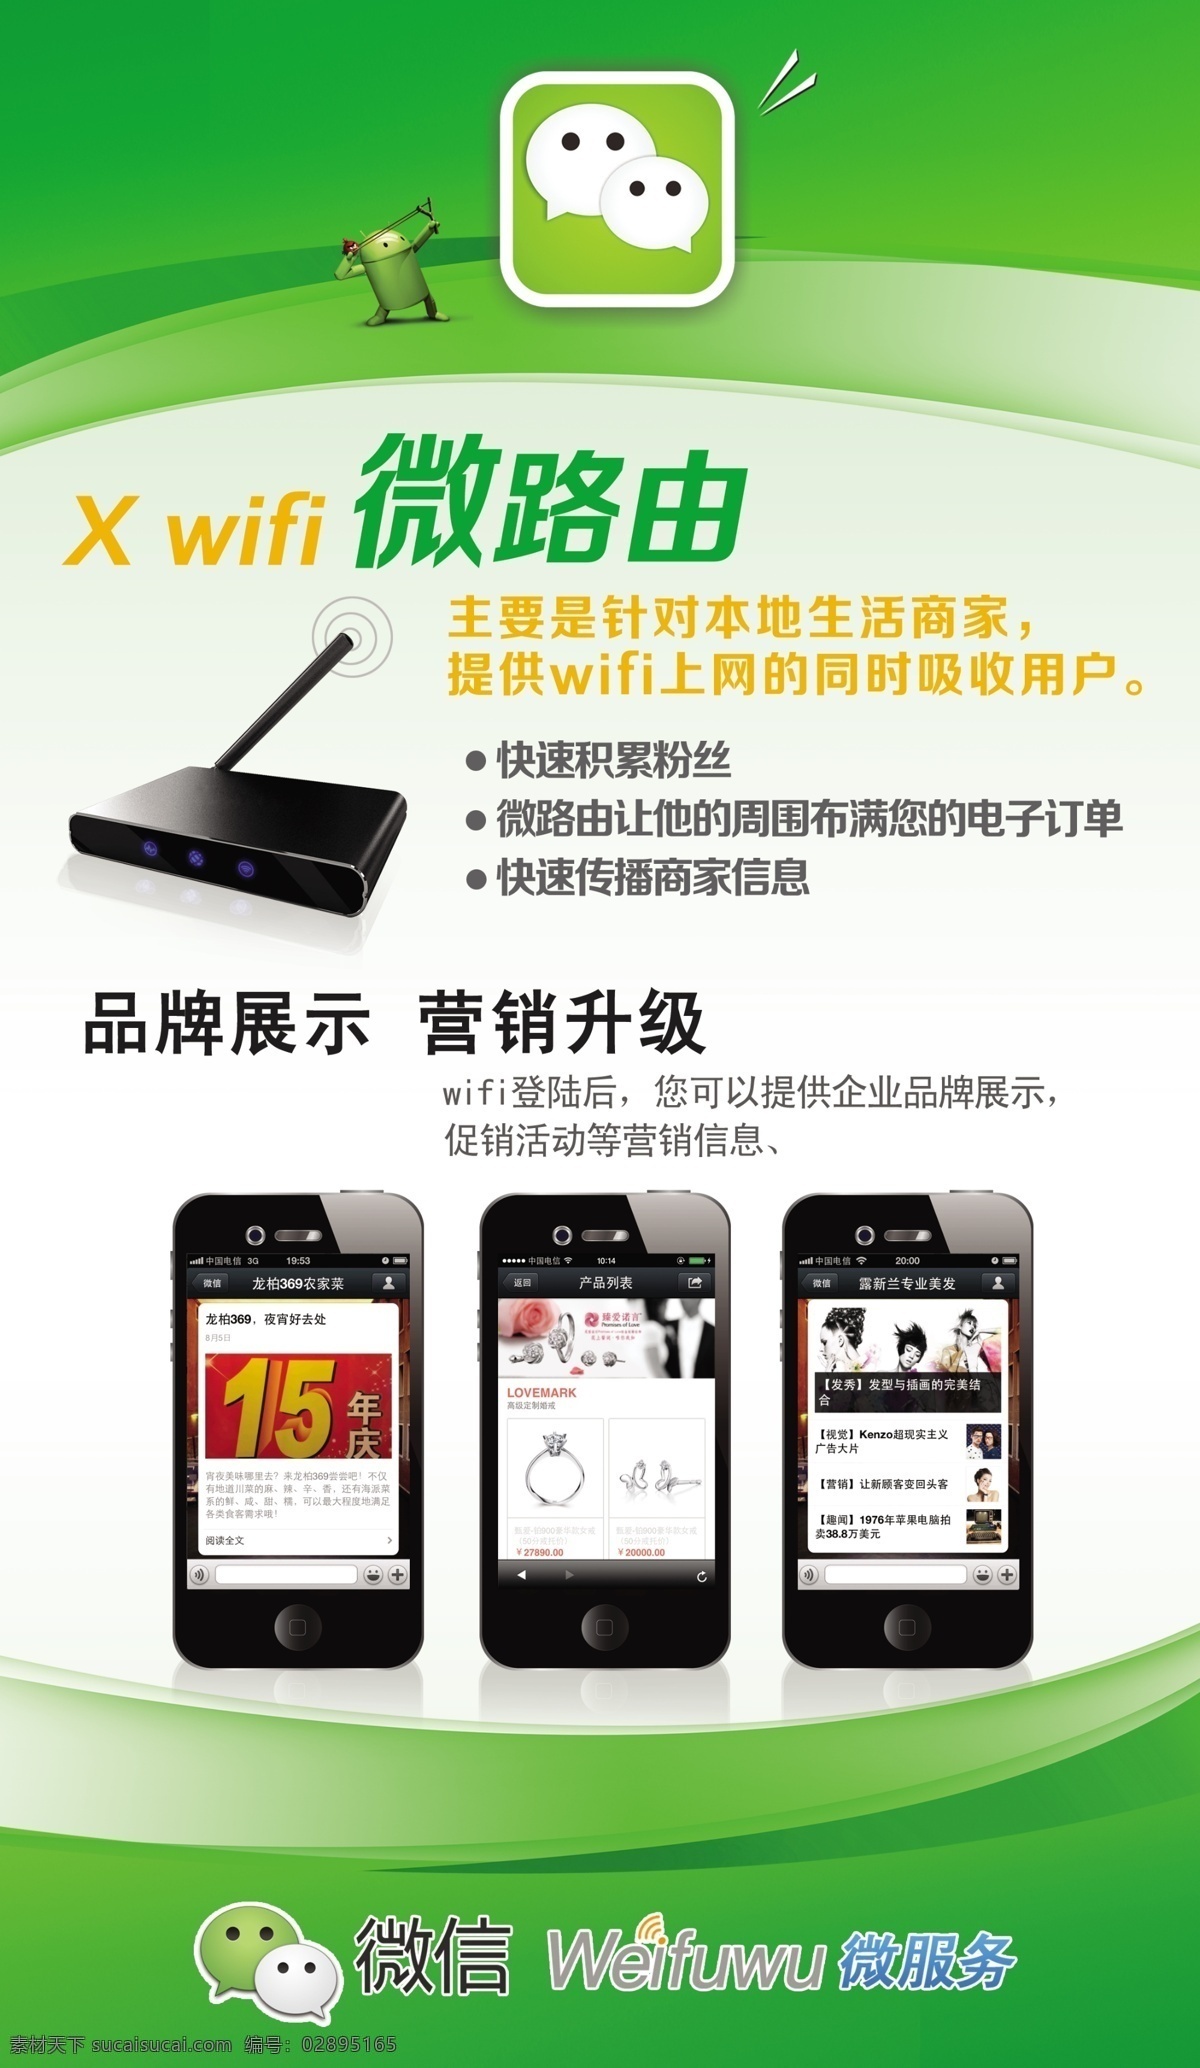 微路由 微信 微信营销 微硬件 路由器 wifi上网 手机 海报 白色